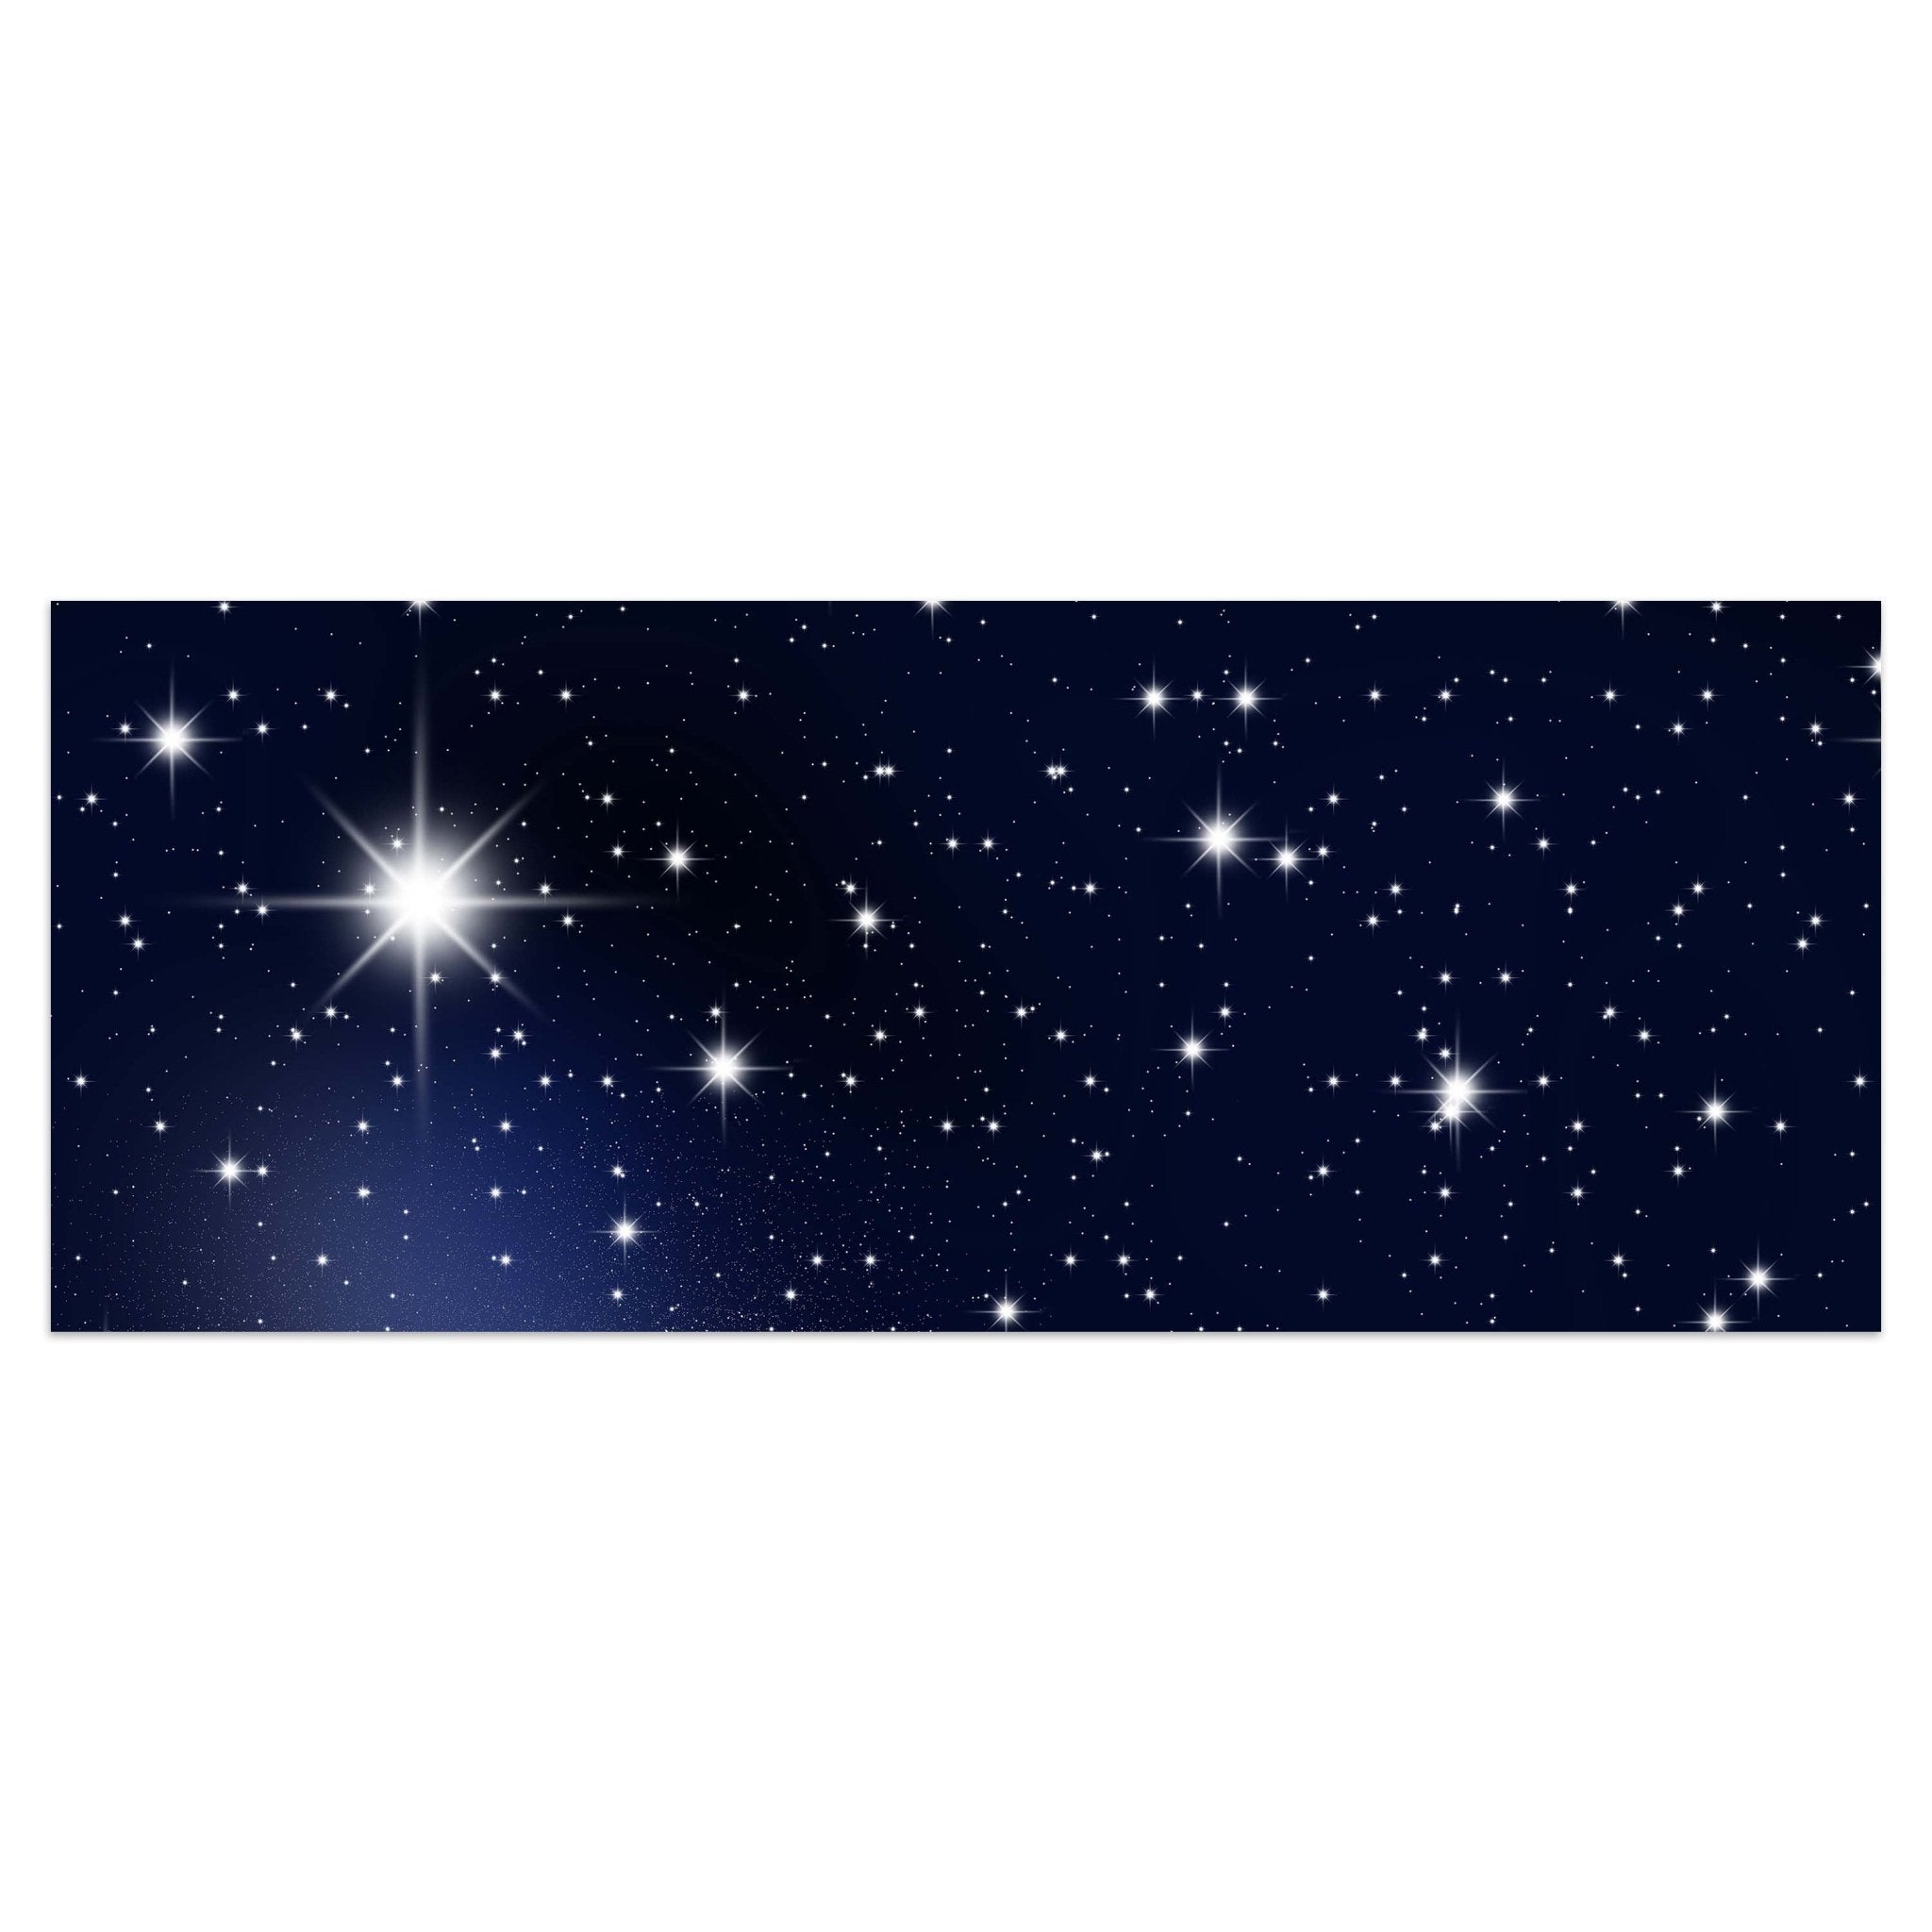 Leinwandbild Sternenhimmel M0019 kaufen - Bild 1